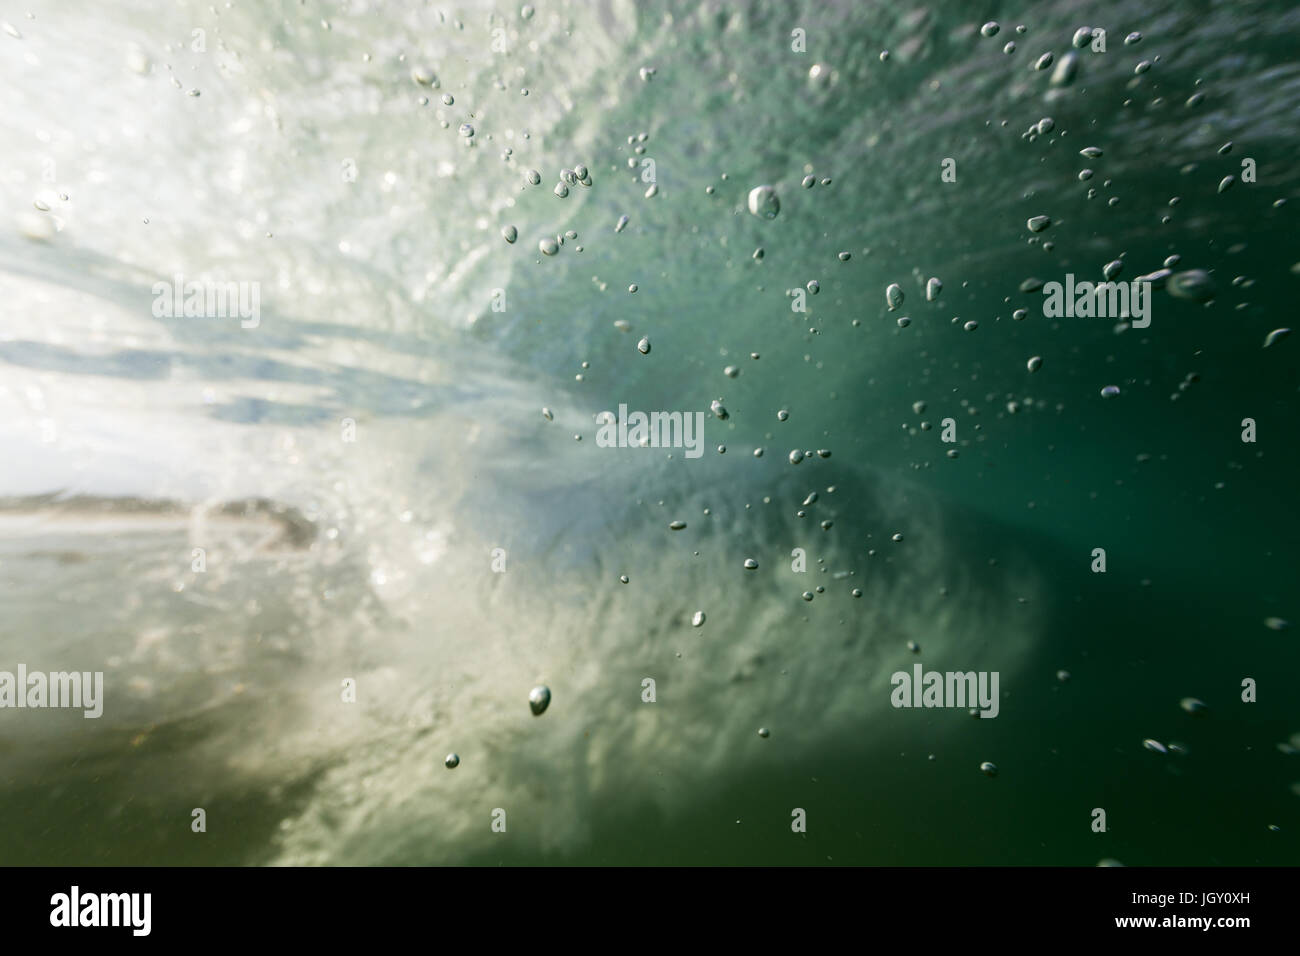 Le bollicine salgono in chiaro l'acqua dell'oceano dal mare piano in questa ripresa subacquea come un'onda passa in background. Foto Stock